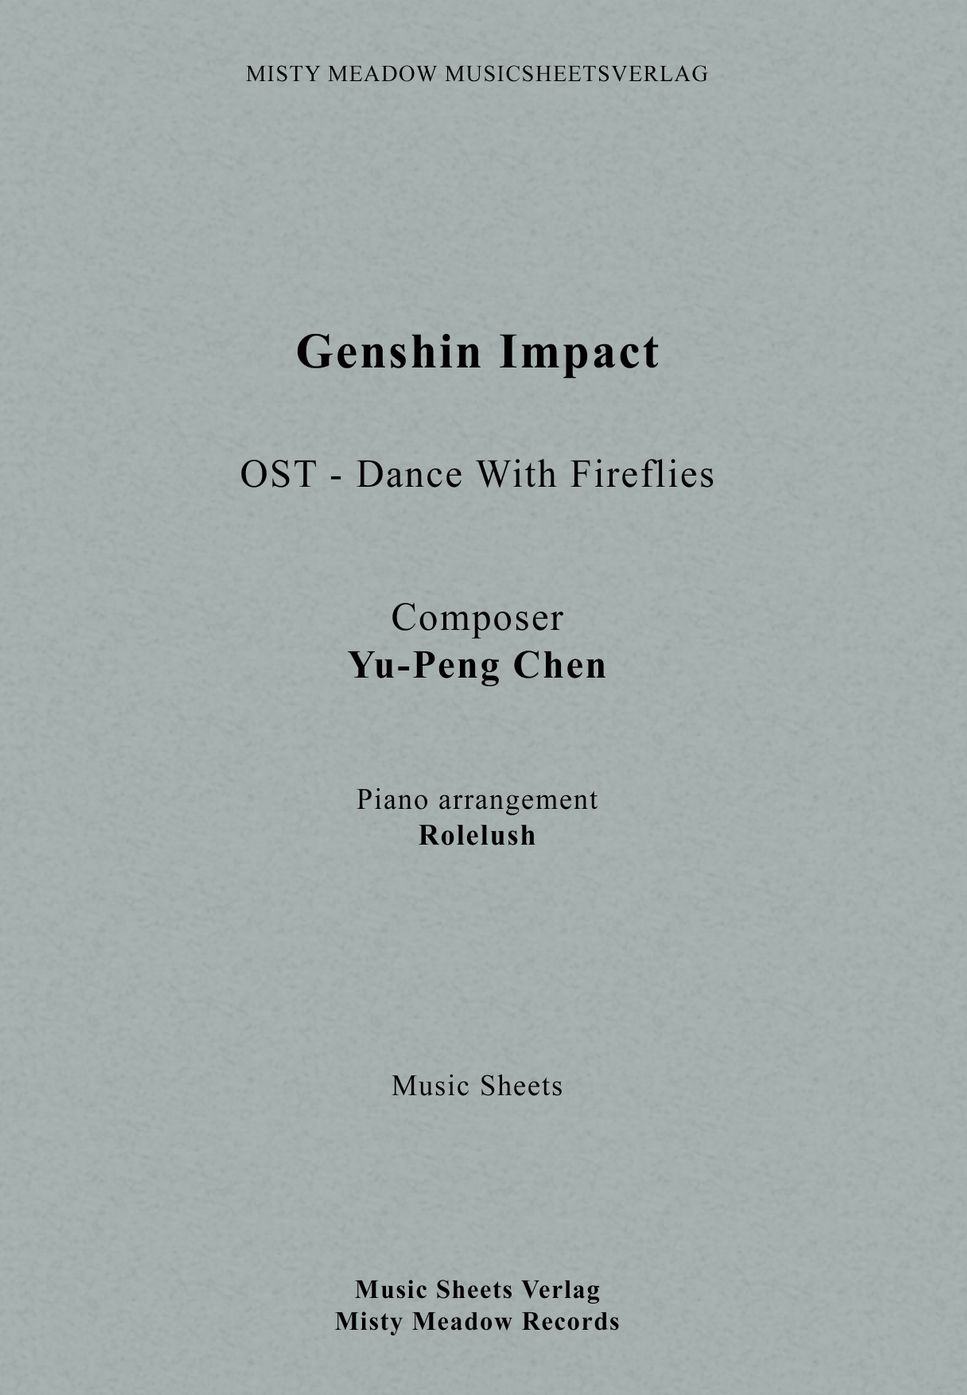 Yu-Peng Chen, HOYO-MiX - Dance With Fireflies (From "Genshin Impact") by ROlleush